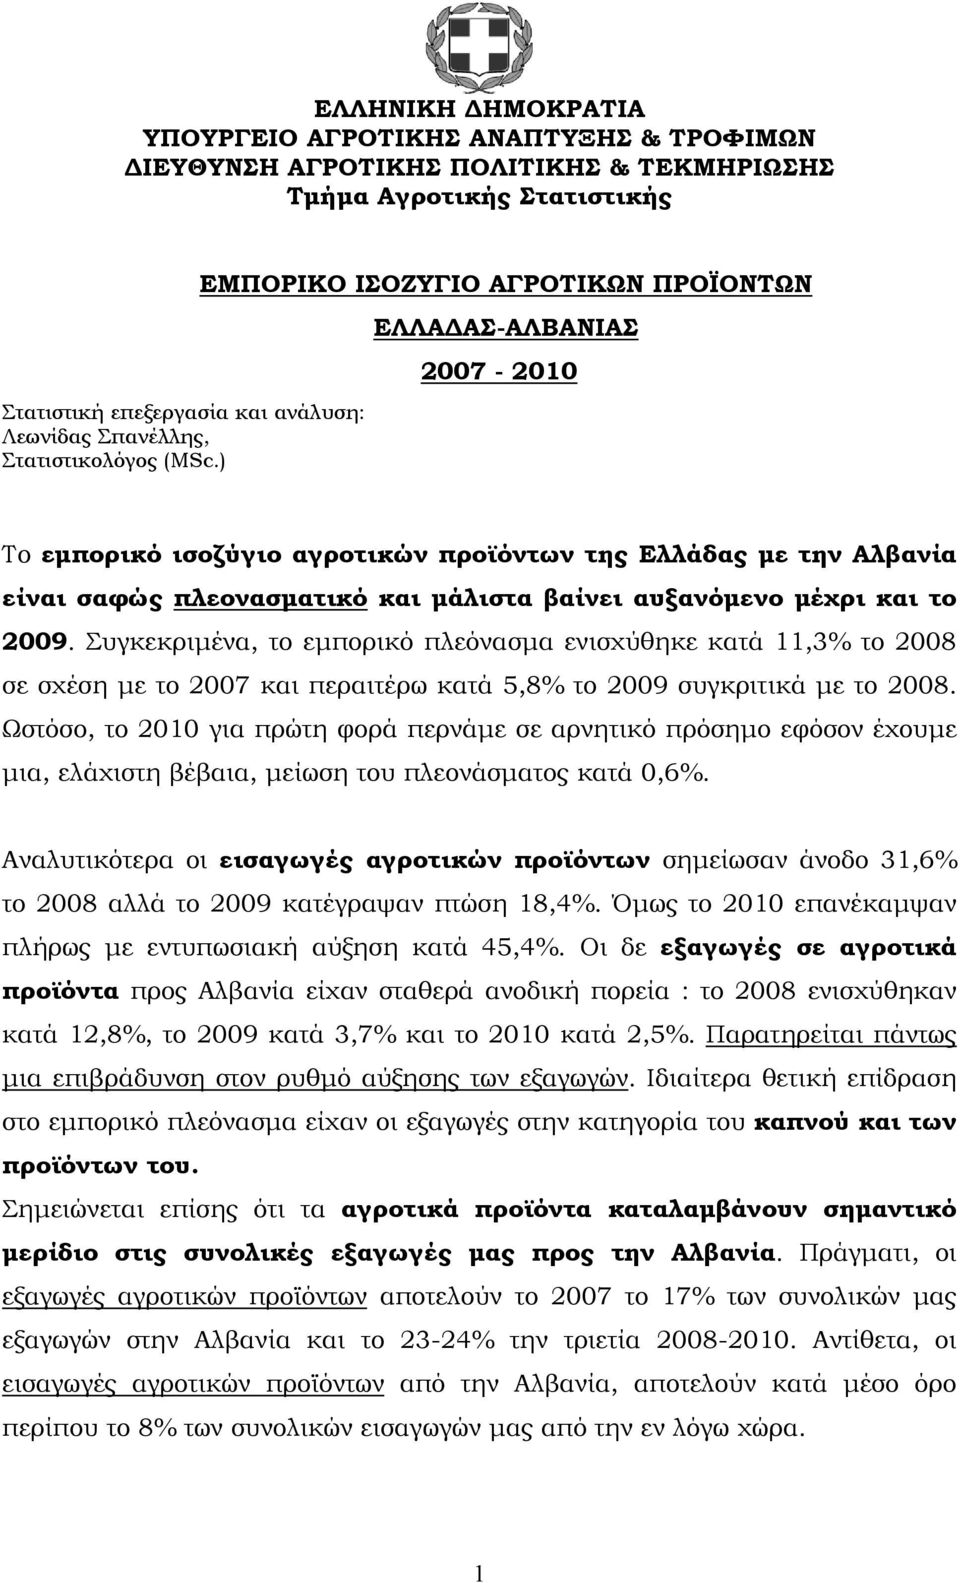 ) ΕΜΠΟΡΙΚΟ ΙΣΟΖΥΓΙΟ ΕΛΛΑΔΑΣ-ΑΛΒΑΝΙΑΣ 2007-2010 Το εμπορικό ισοζύγιο αγροτικών προϊόντων της Ελλάδας με την Αλβανία είναι σαφώς πλεονασματικό και μάλιστα βαίνει αυξανόμενο μέχρι και το 2009.